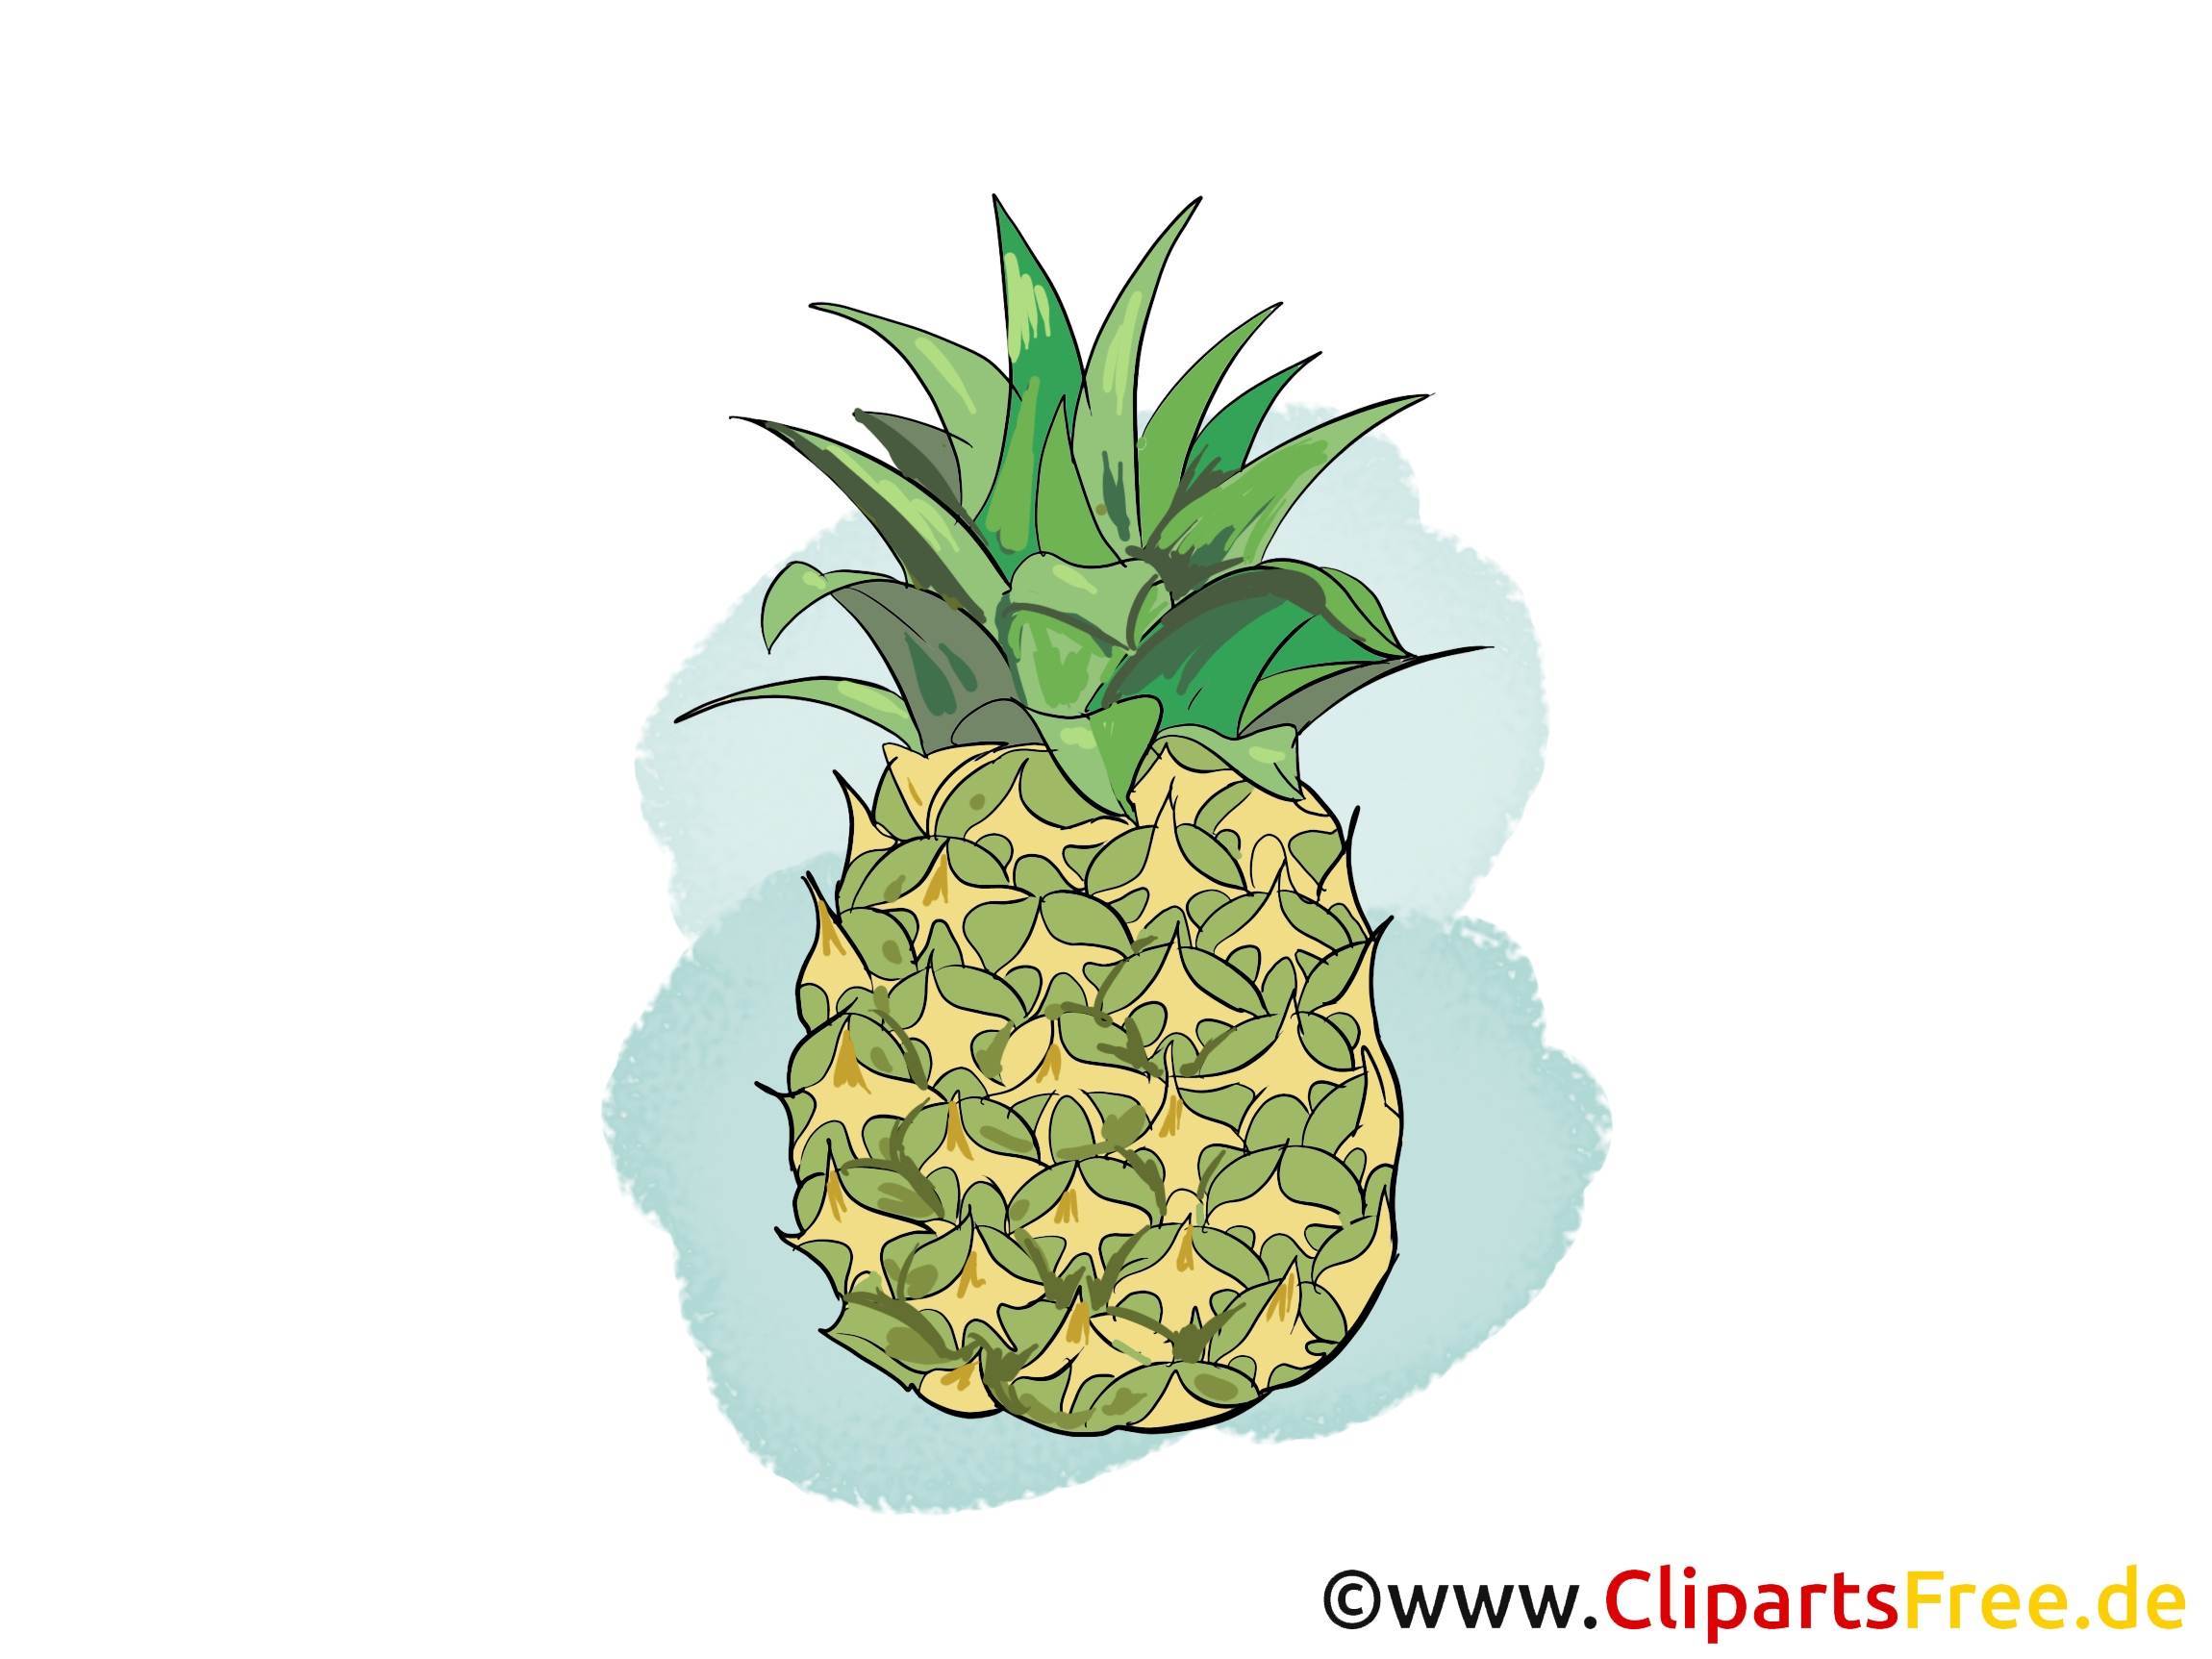 Ananas fruits image à télécharger gratuite